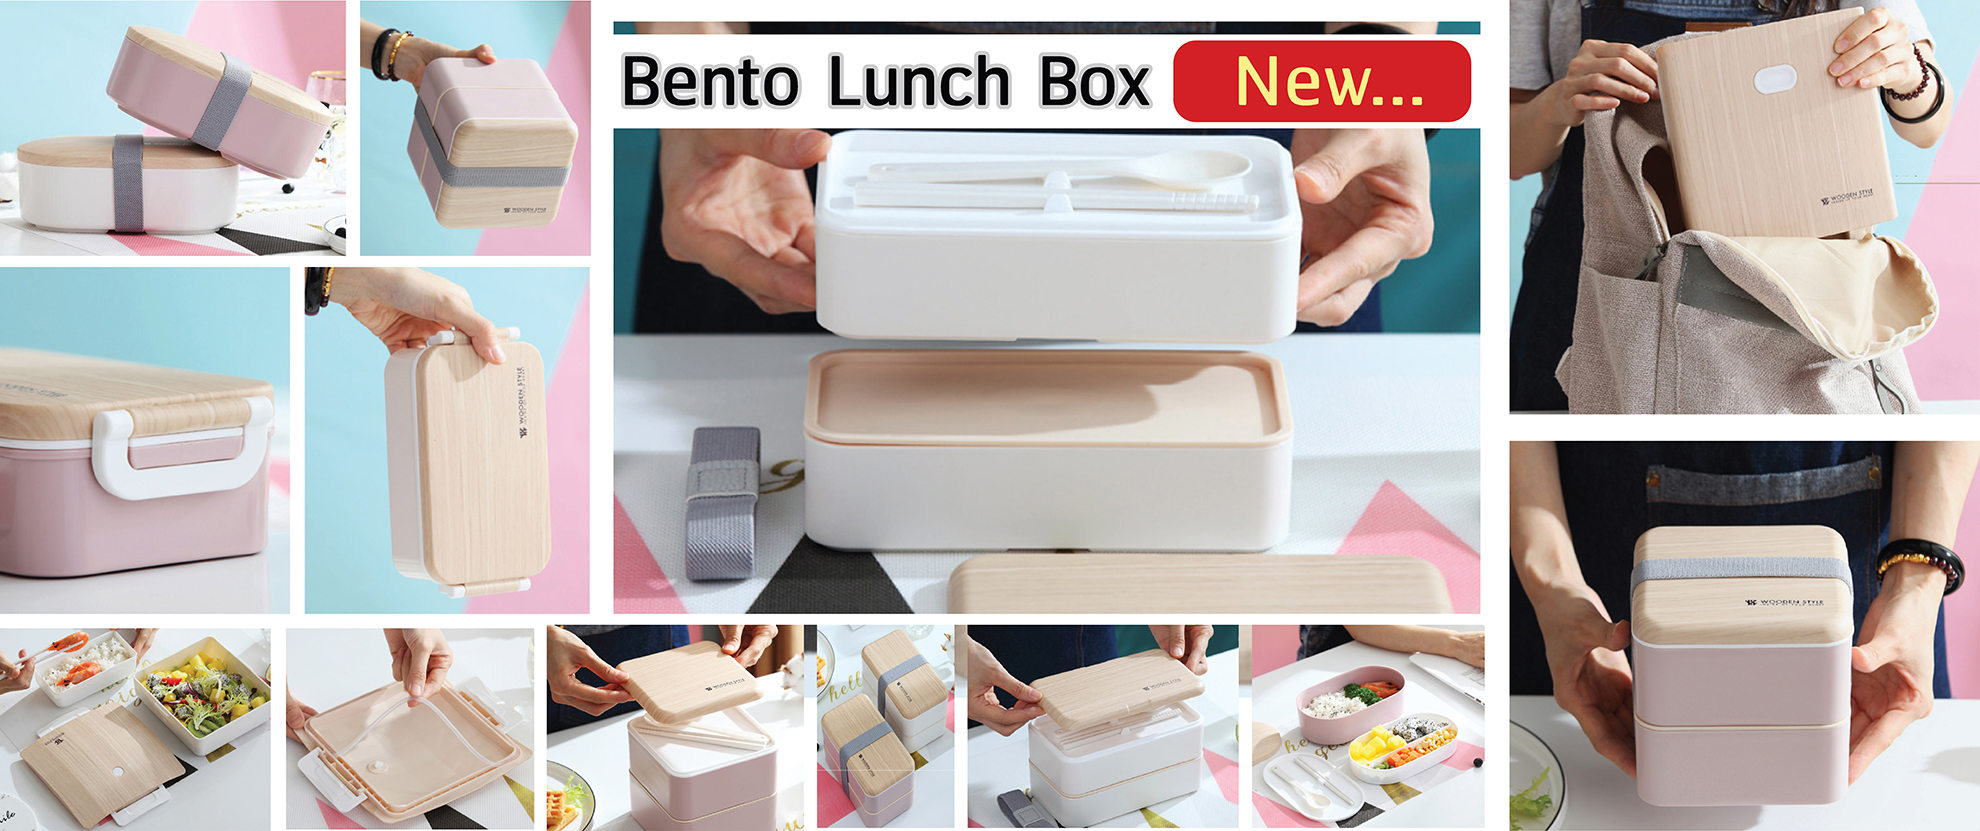 #Lunch Box #กล่องข้าว #กล่องอาหาร Bento Lunch #Lunch Box #กล่องอาหาร กล่องข้าว #กล่องข้าวสแตนเลส #กล่องข้าวเวฟได้ #กล่องใส่อาหารกลางวัน #กล่องใส่ข้าวกลางวัน #Lunch Box #กล่องเวฟได้ #กล่องอาหารน่ารักๆ #กล่องข้าวสแตนเลส 304